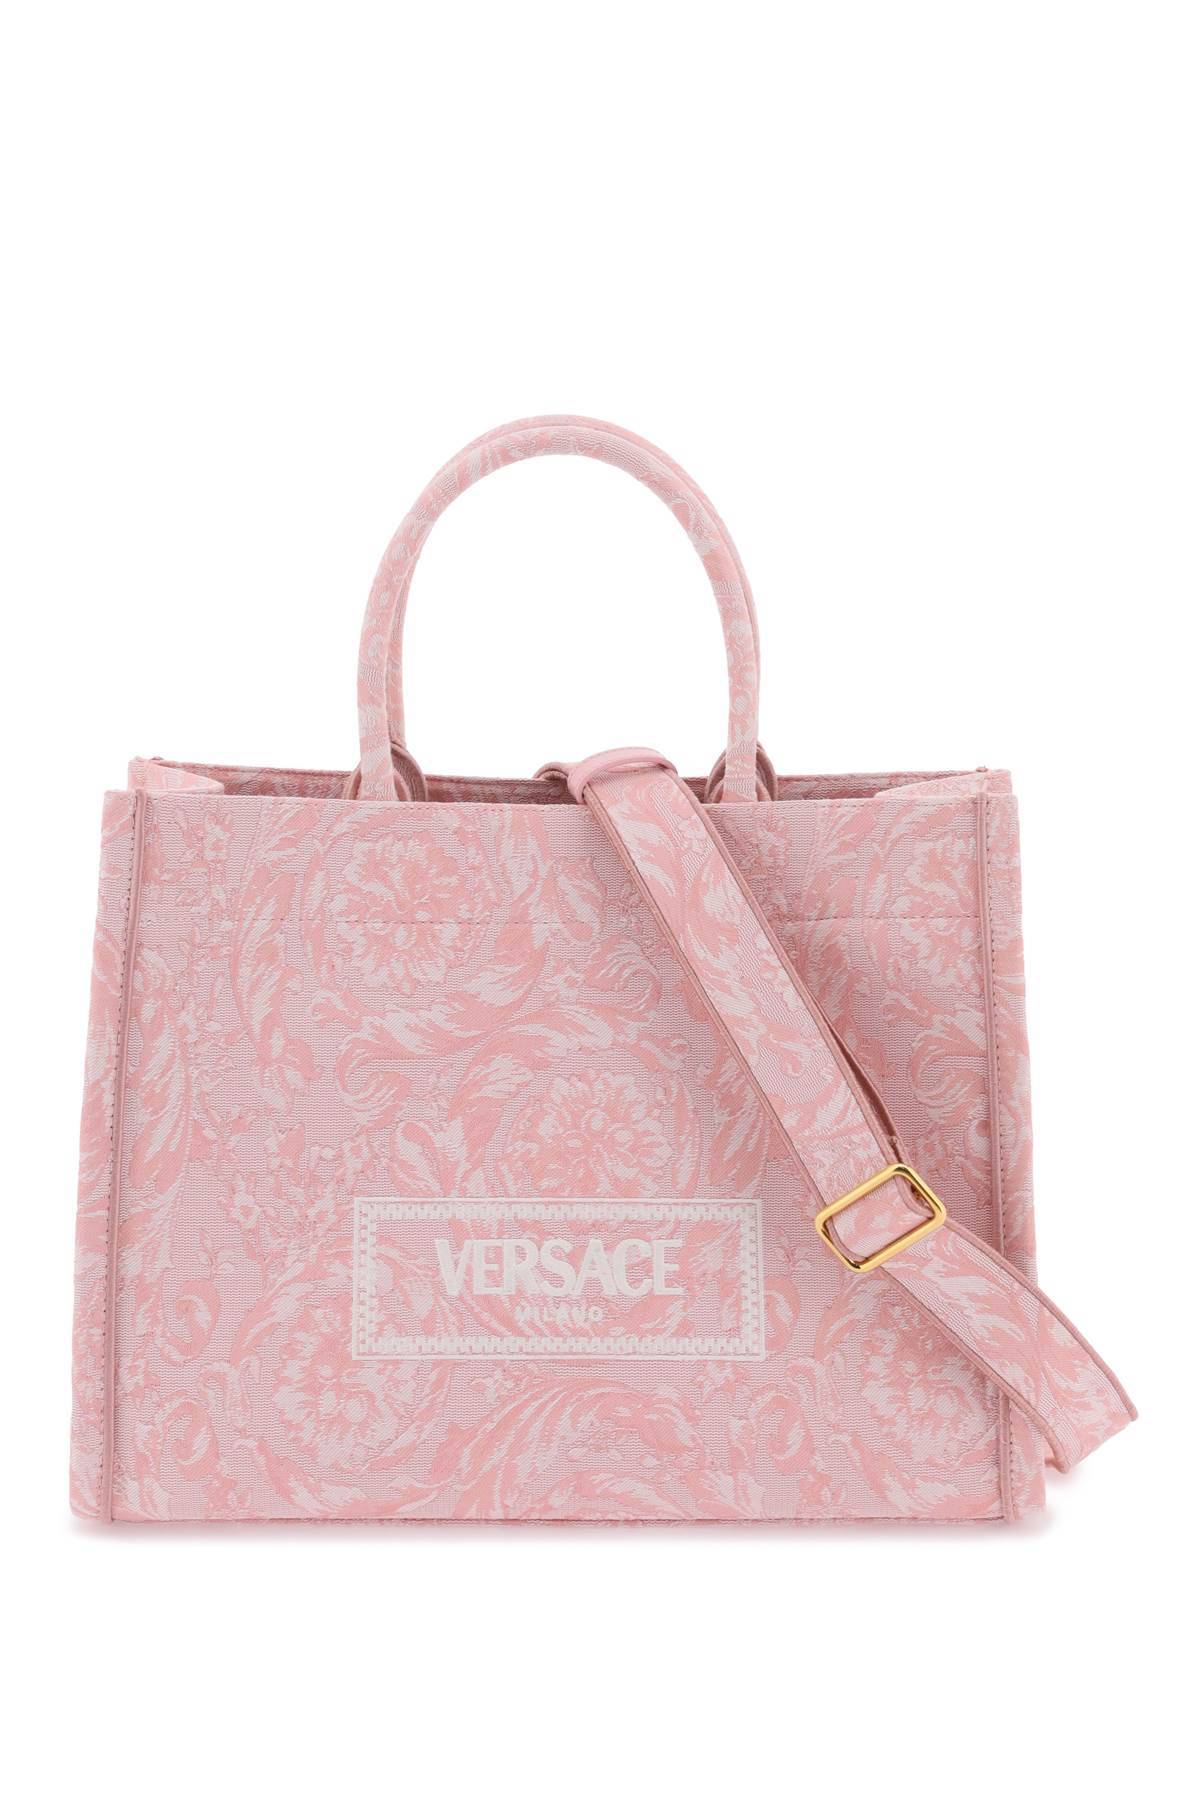 Versace VERSACE large athena barocco tote bag